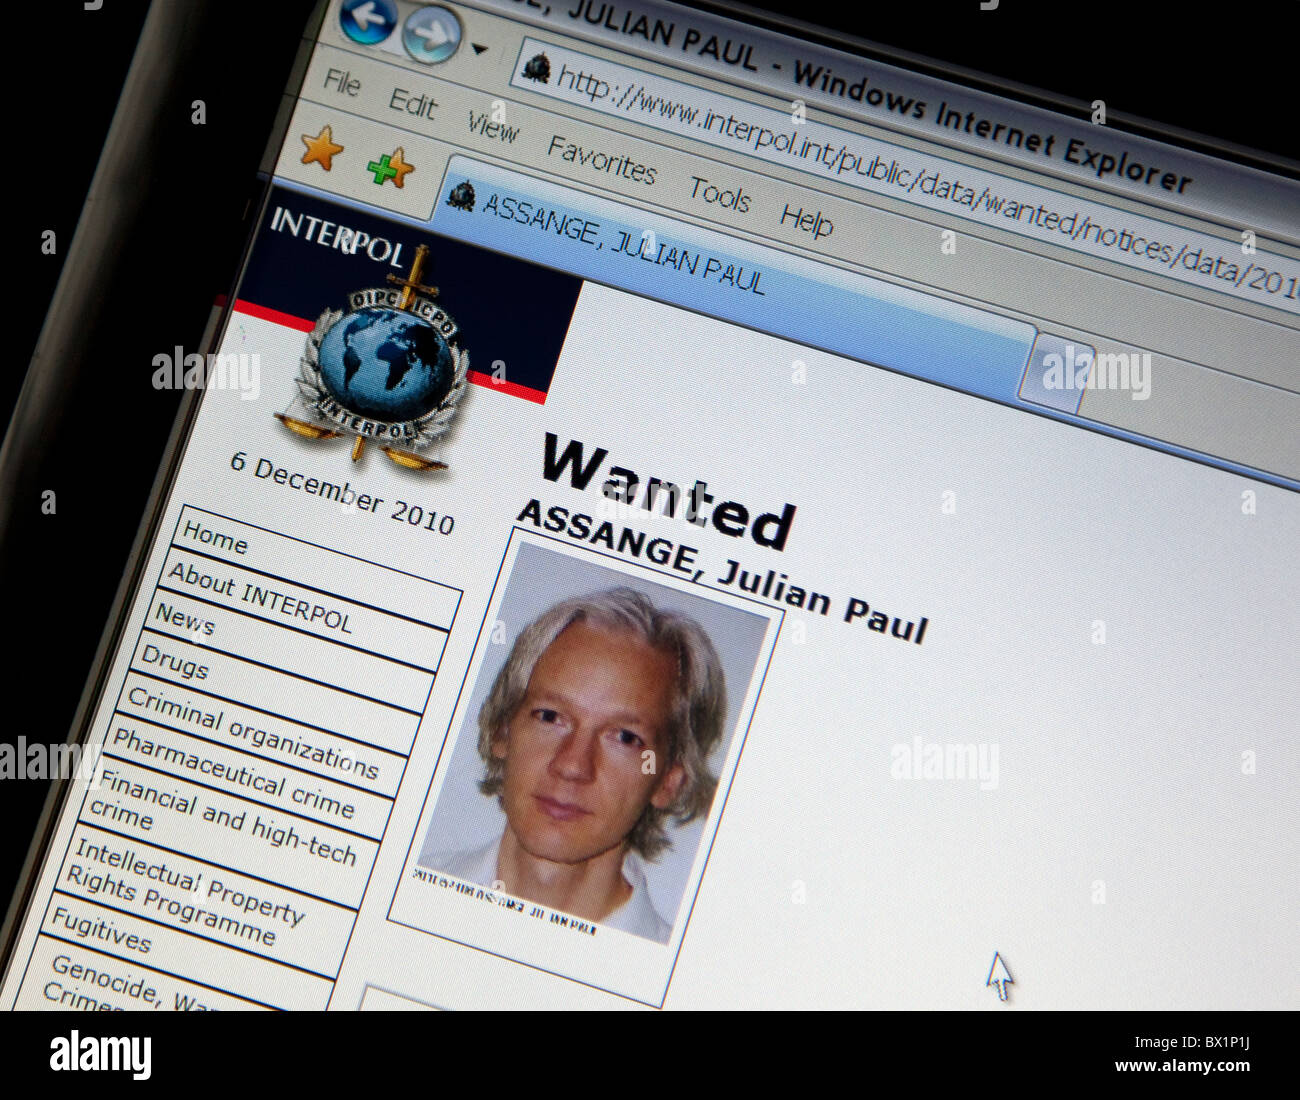 Jullian Assange of WikiLeaks 'Wanted' on Interpol website Stock Photo